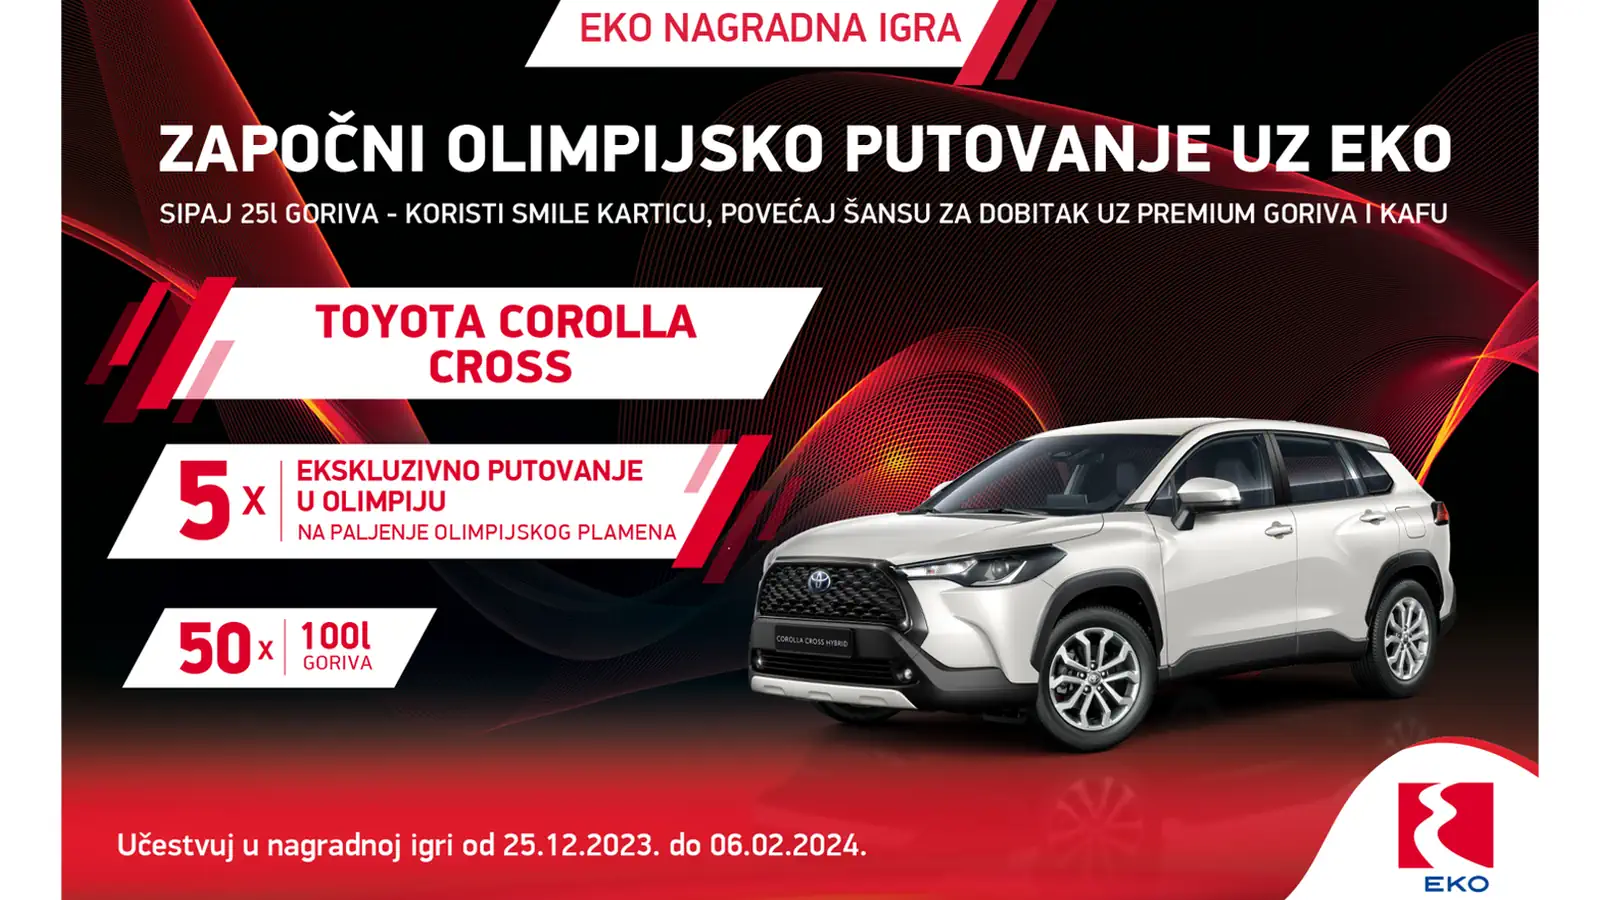 EKO nagradna igra: Osvoji automobil Toyota Corolla Cross ili Olimpijsko putovanje u Grčku